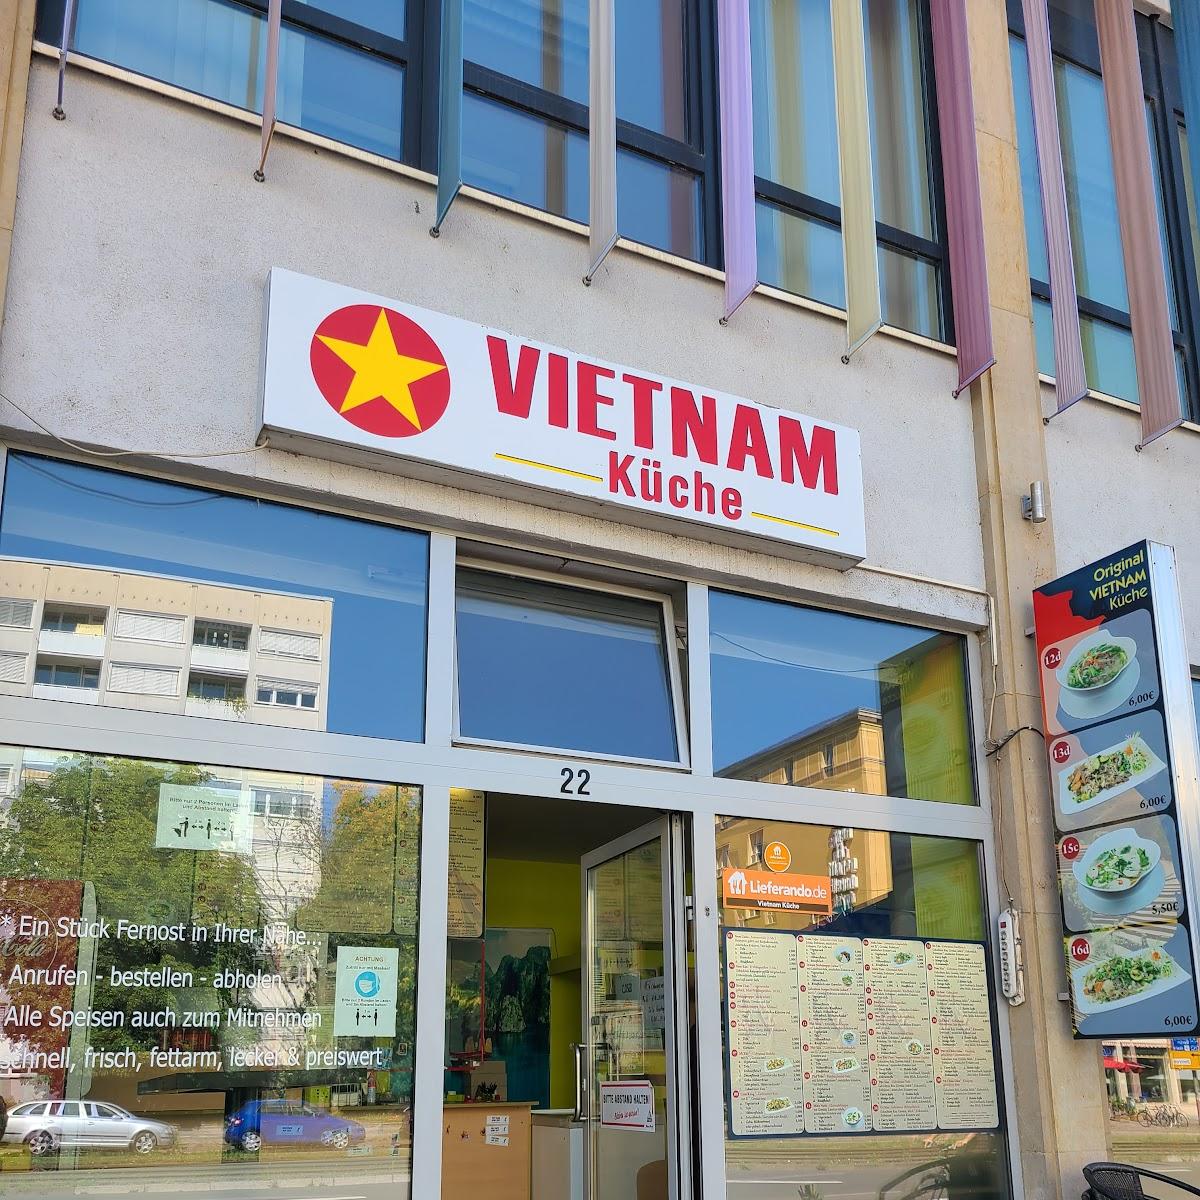 Restaurant "Vietnam Küche" in Leipzig